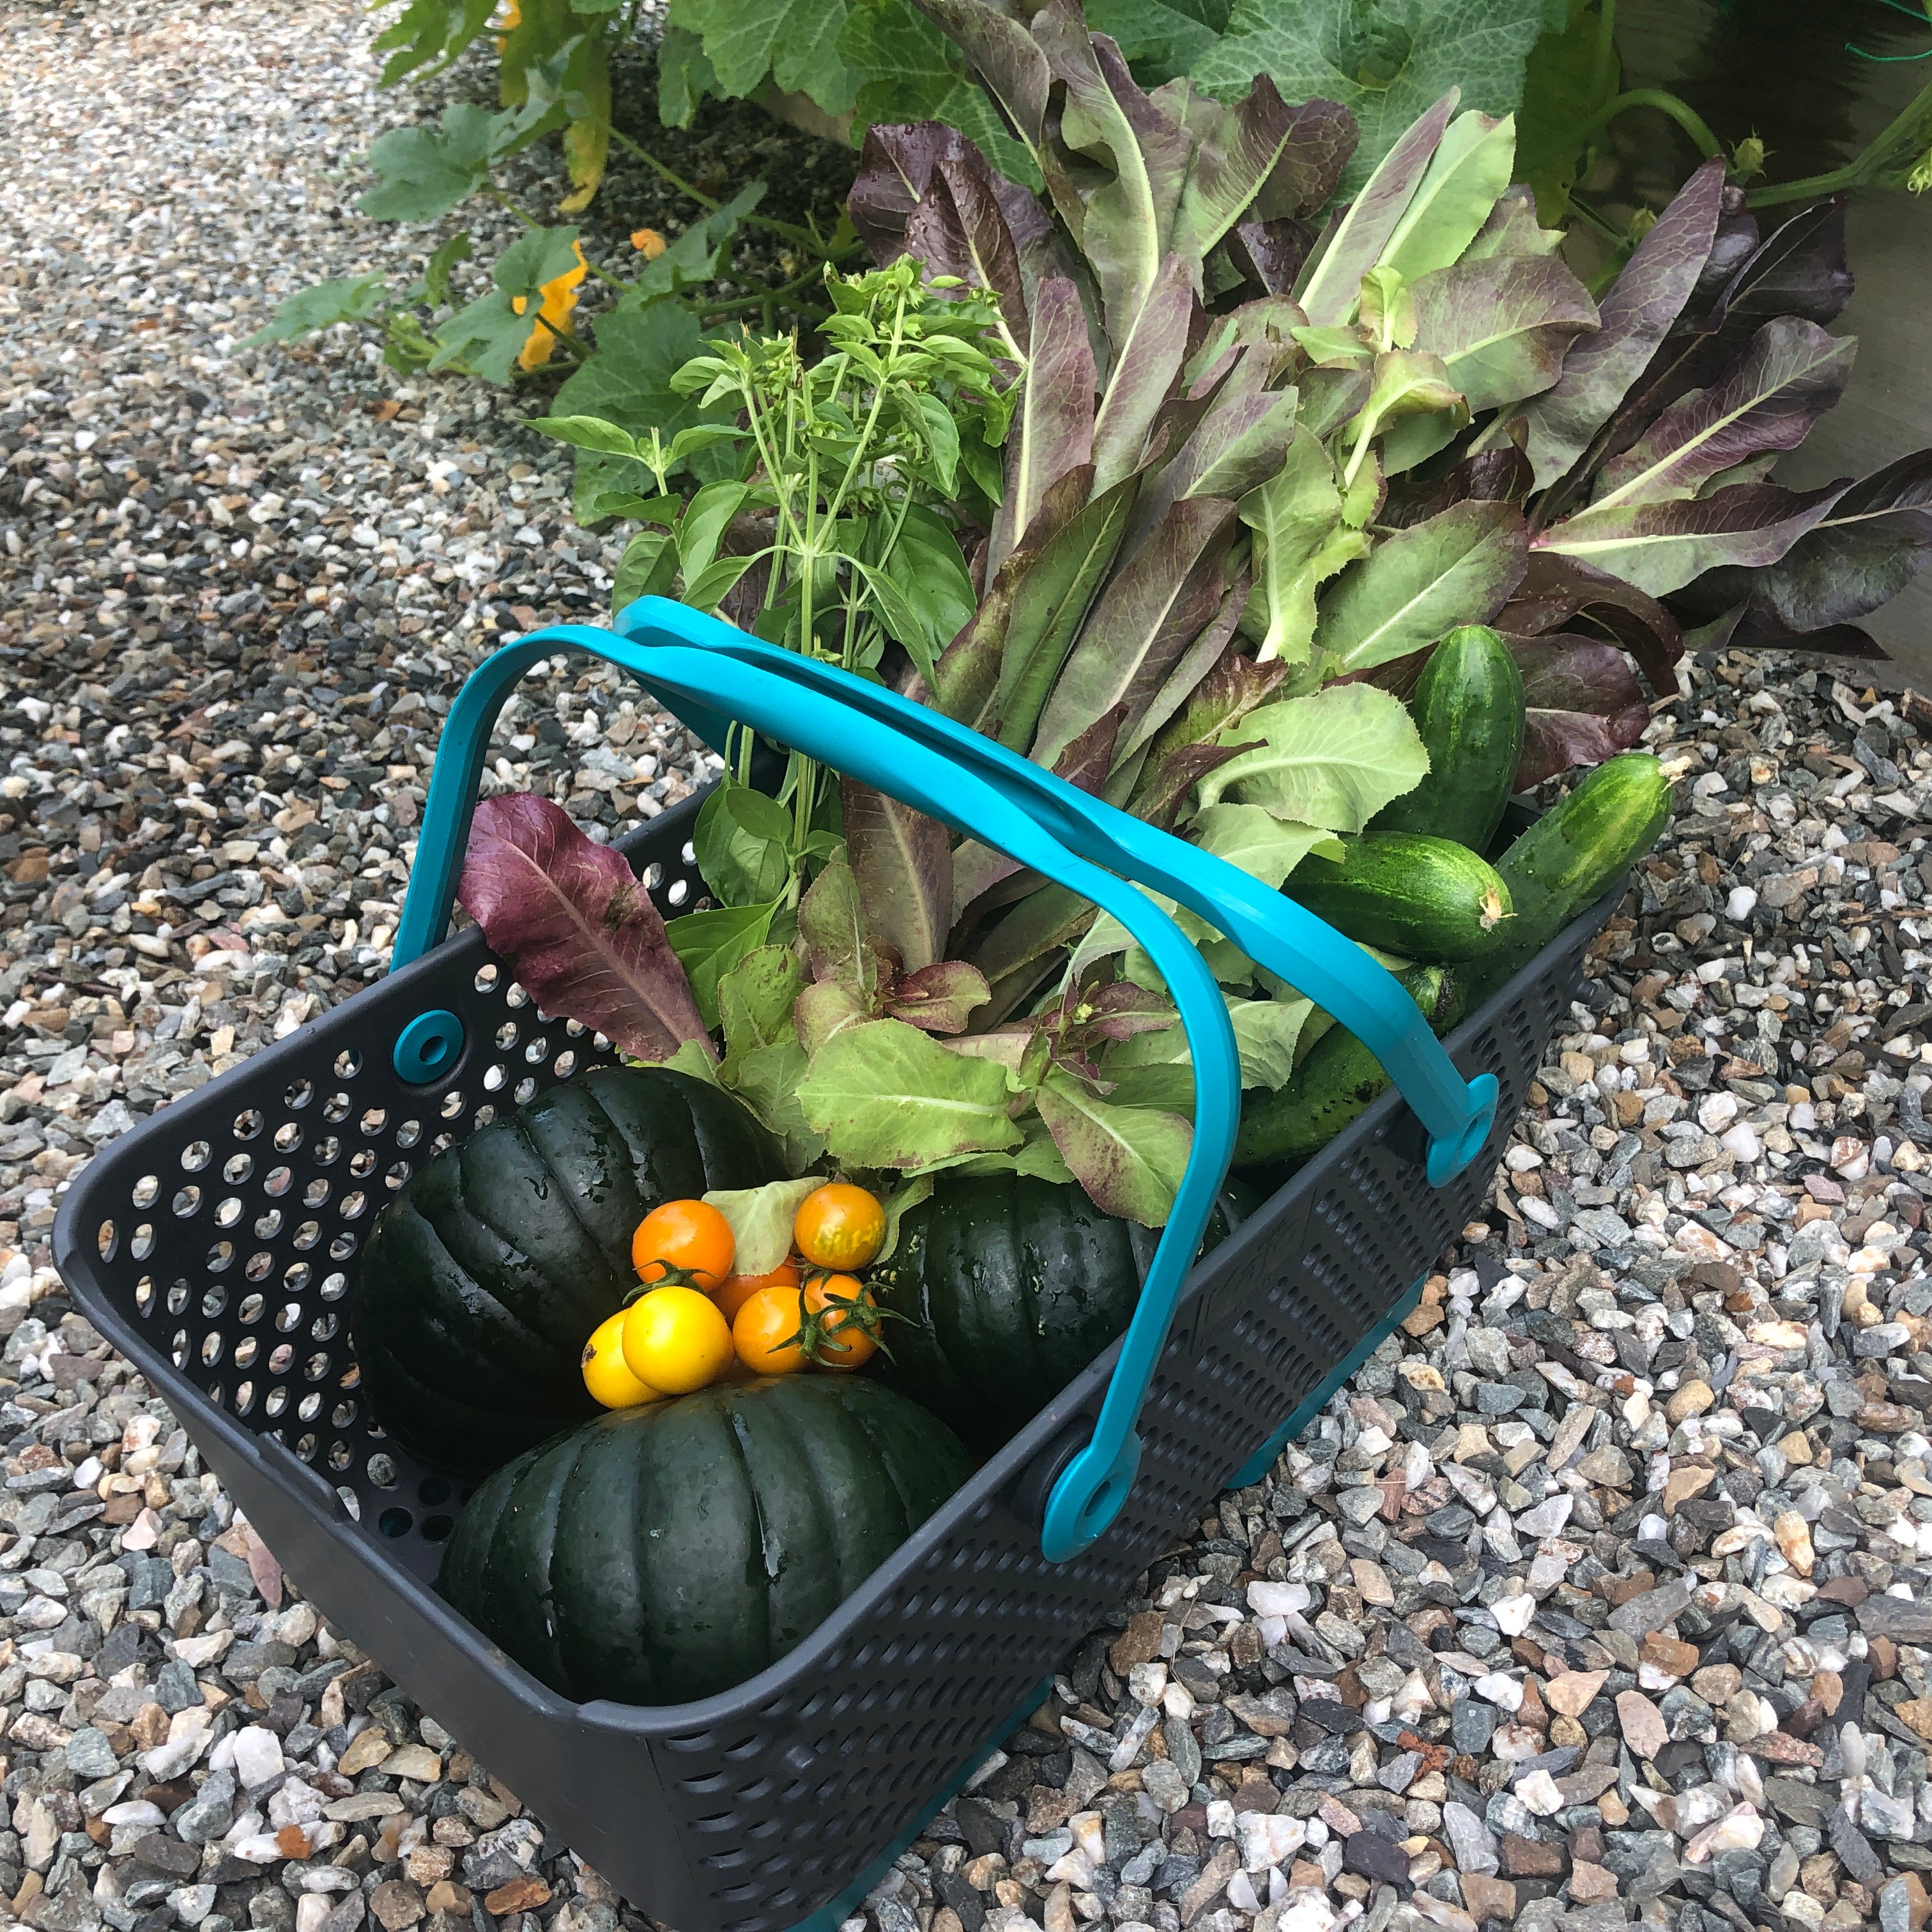 Mod hod basket filled with vegetables